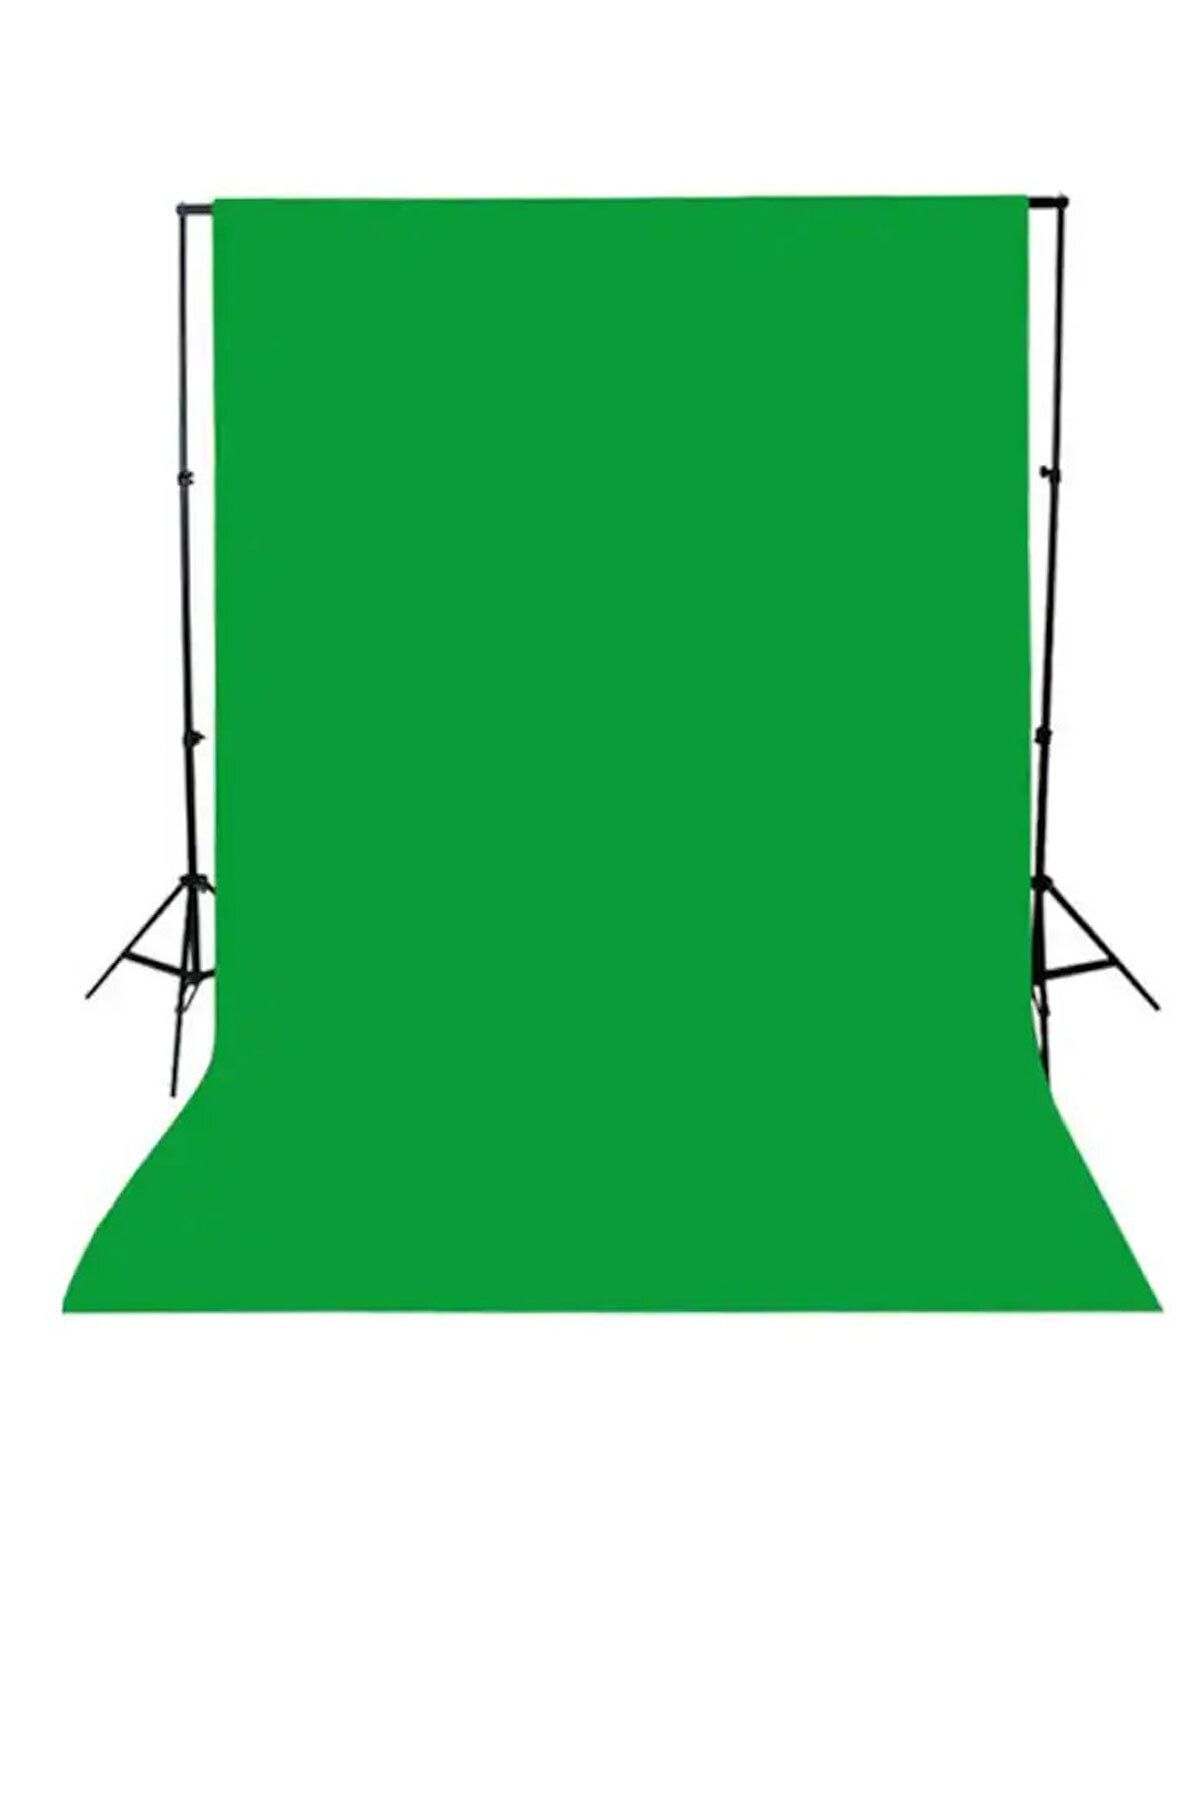 Deyatech Green Screen- Greenbox -yeşil Fon Perde (3x6m) + Fon Standı